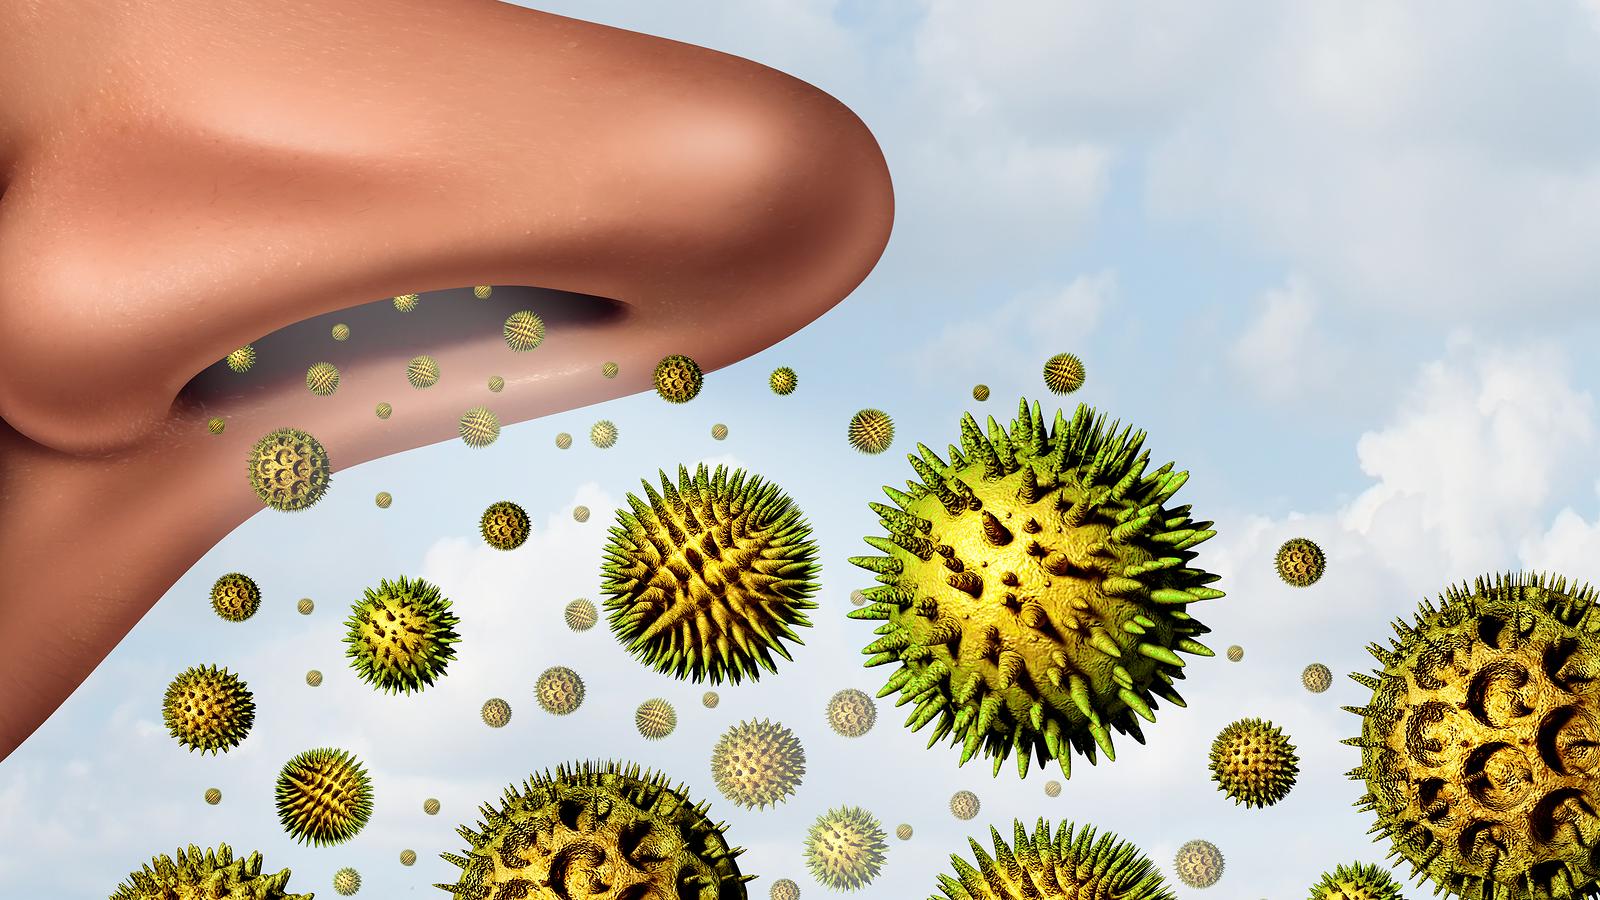 Parlagfű-allergia: segít a természet  